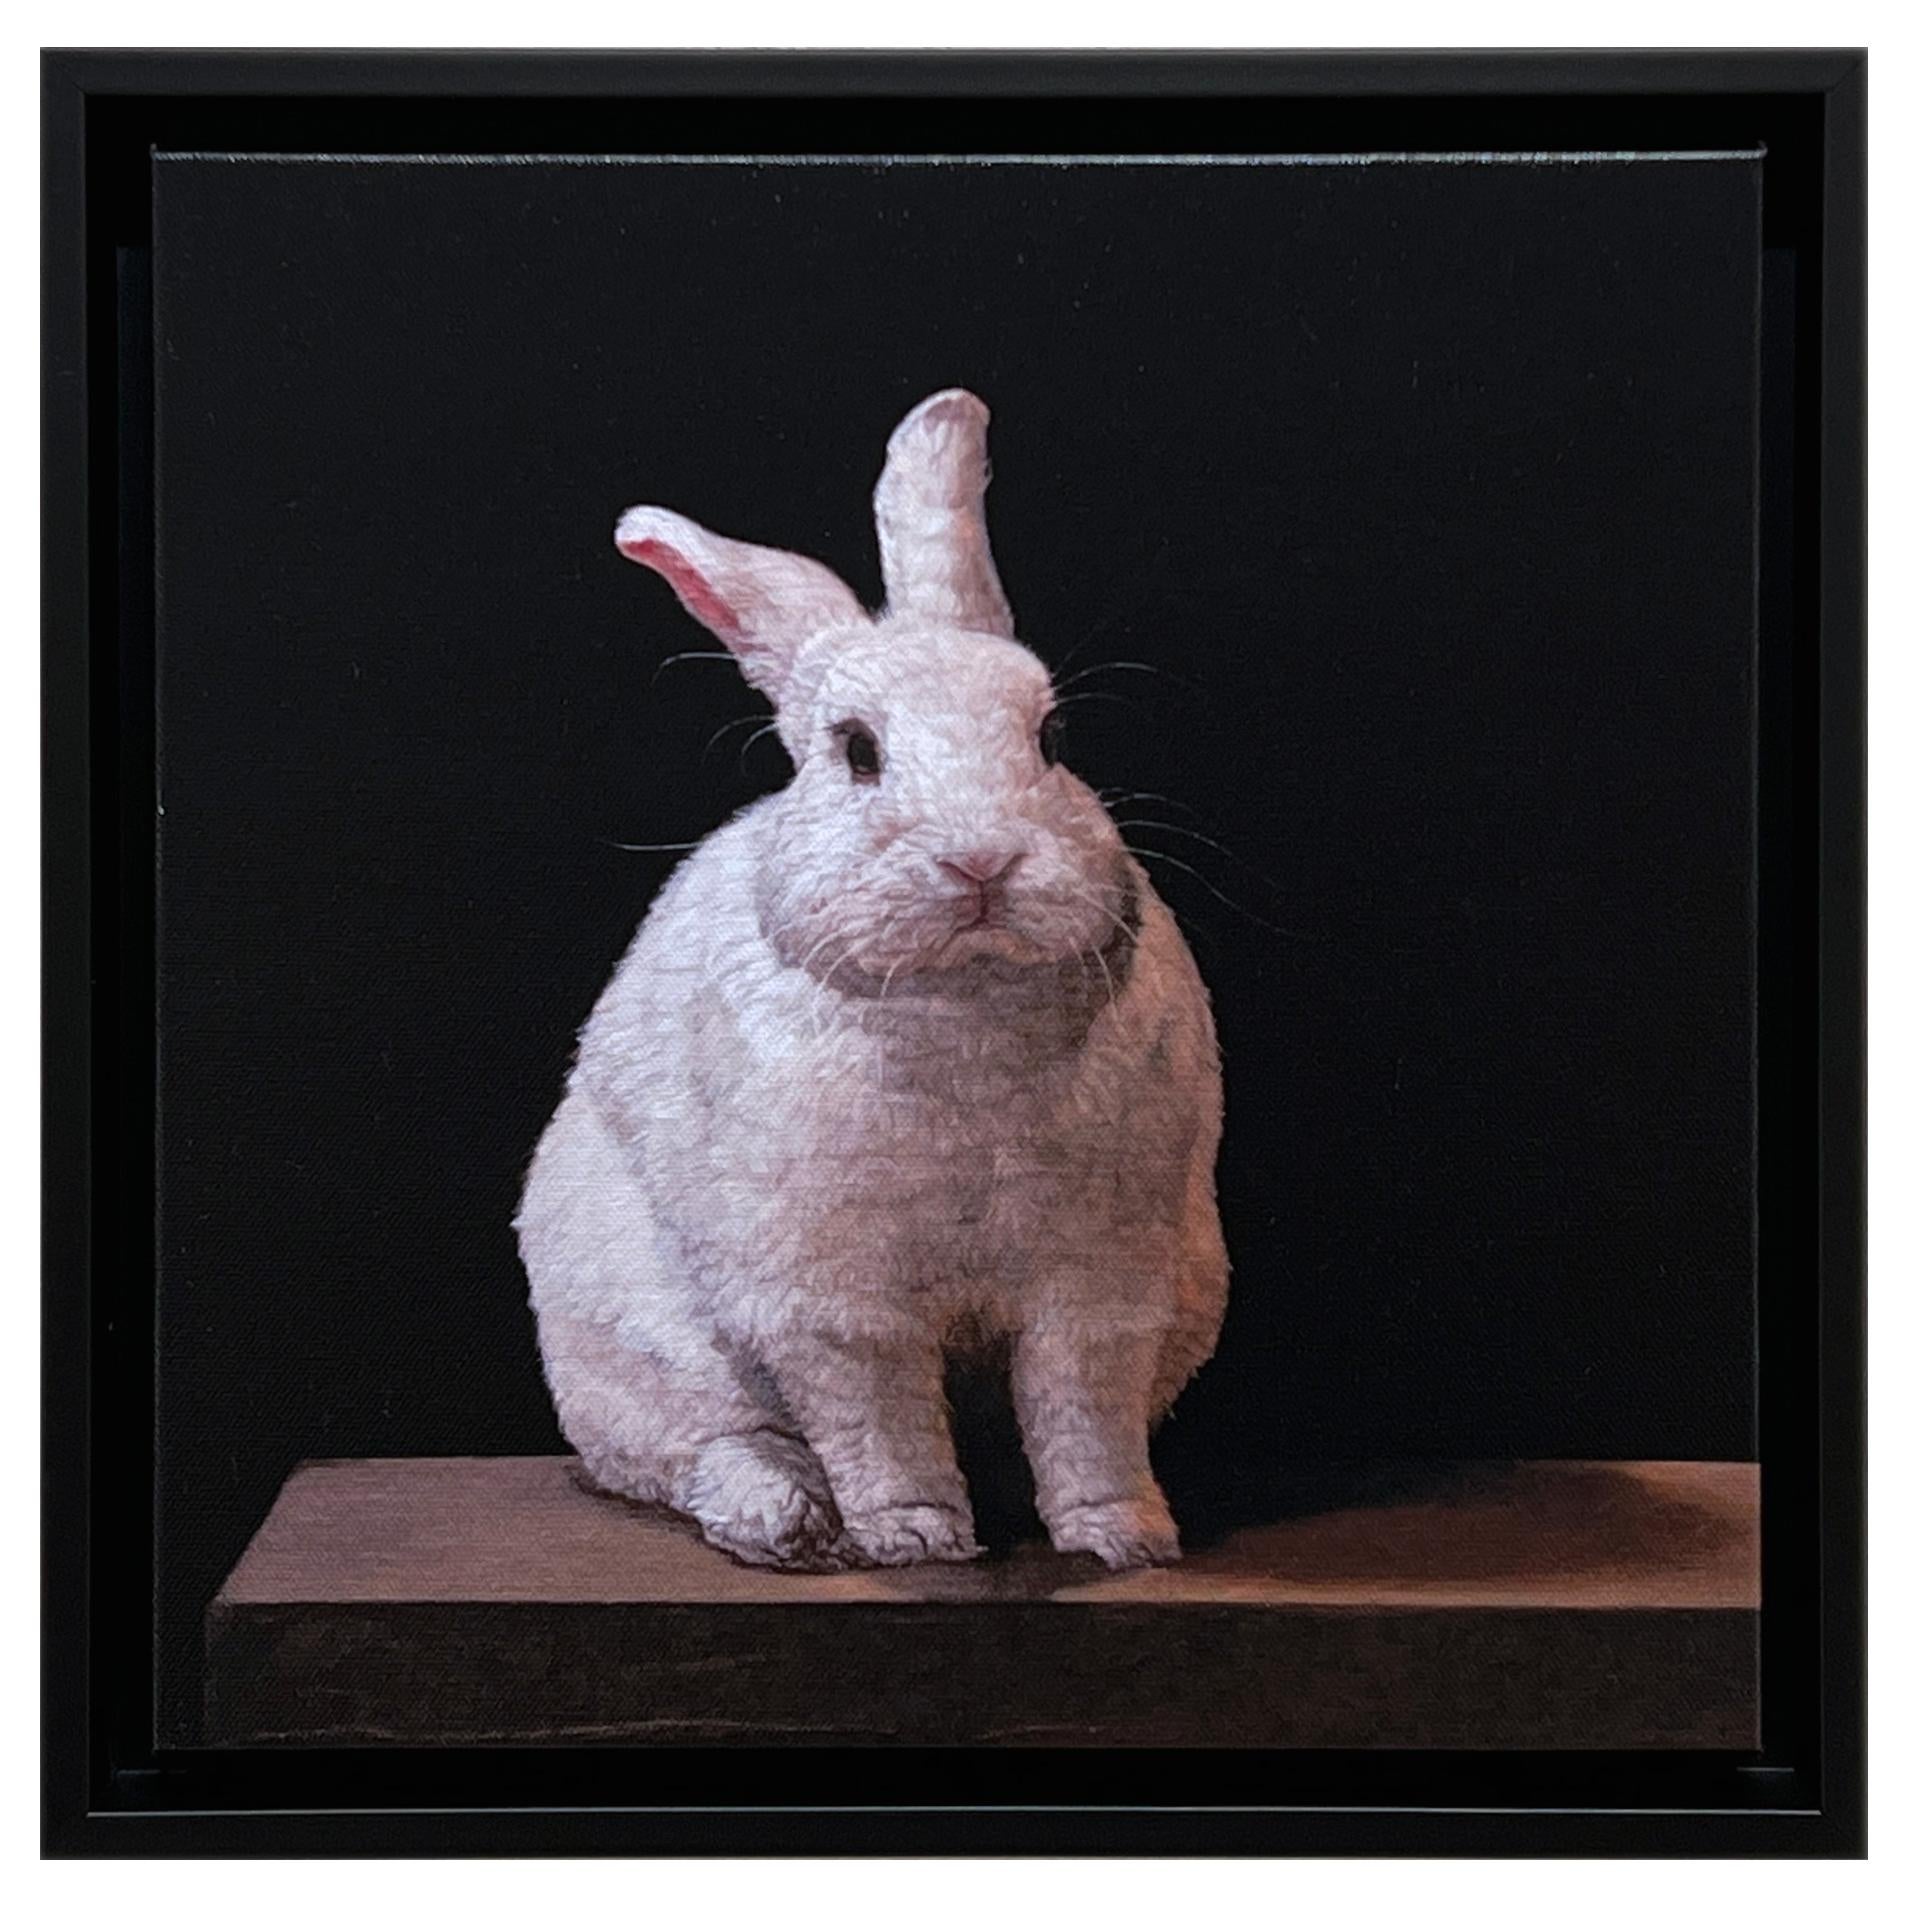 LAPIN HYBRIDE - Contemporary / photorealism / animal print 